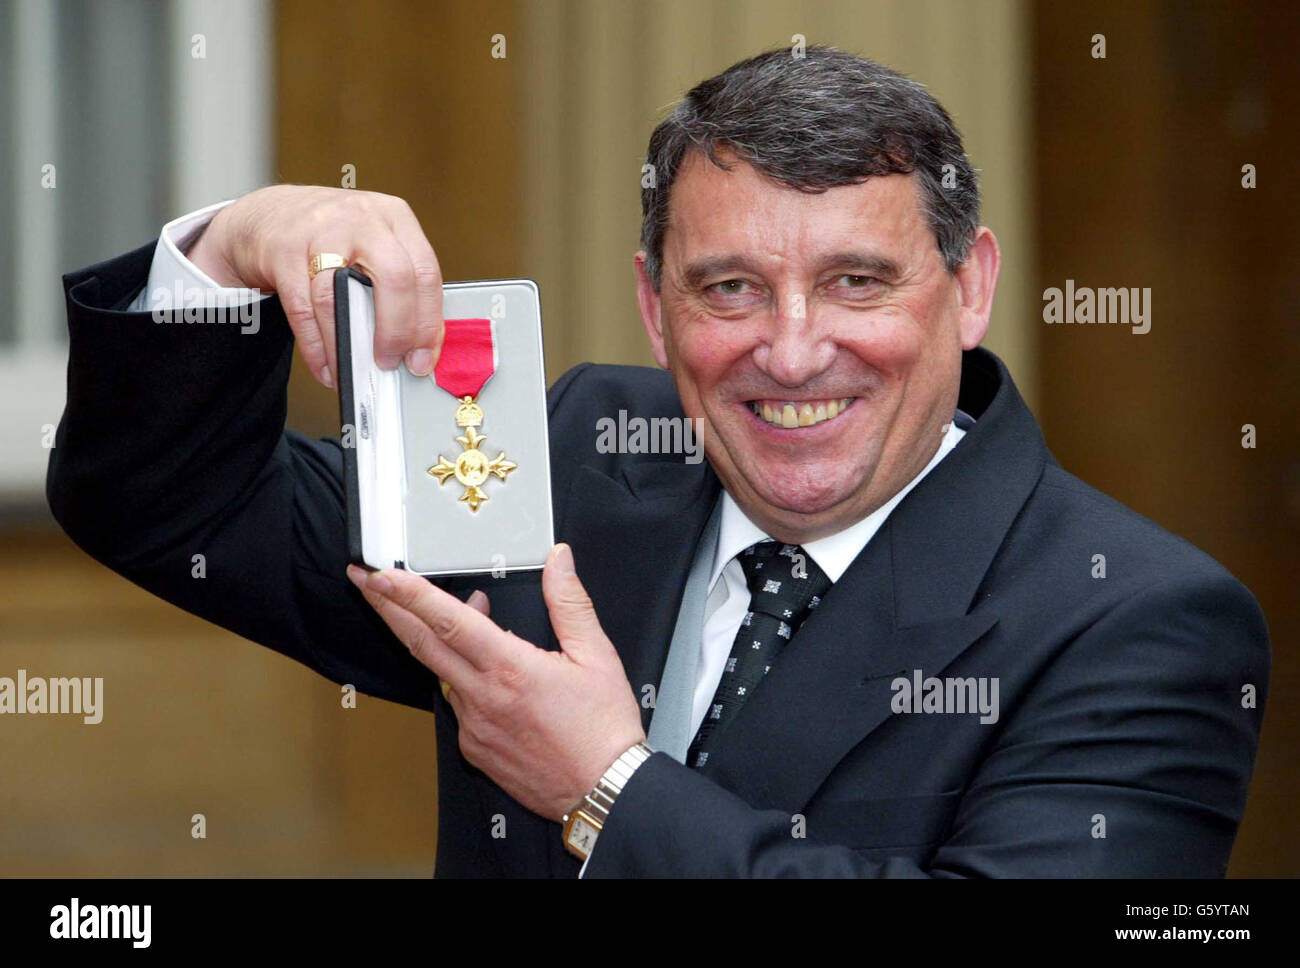 Graham Taylor, manager della squadra di calcio Aston Villa ed ex boss dell'Inghilterra, detiene la medaglia ufficiale dell'Impero britannico (OBE) che gli è stata presentata dal Principe di Galles a Buckingham Palace. Foto Stock